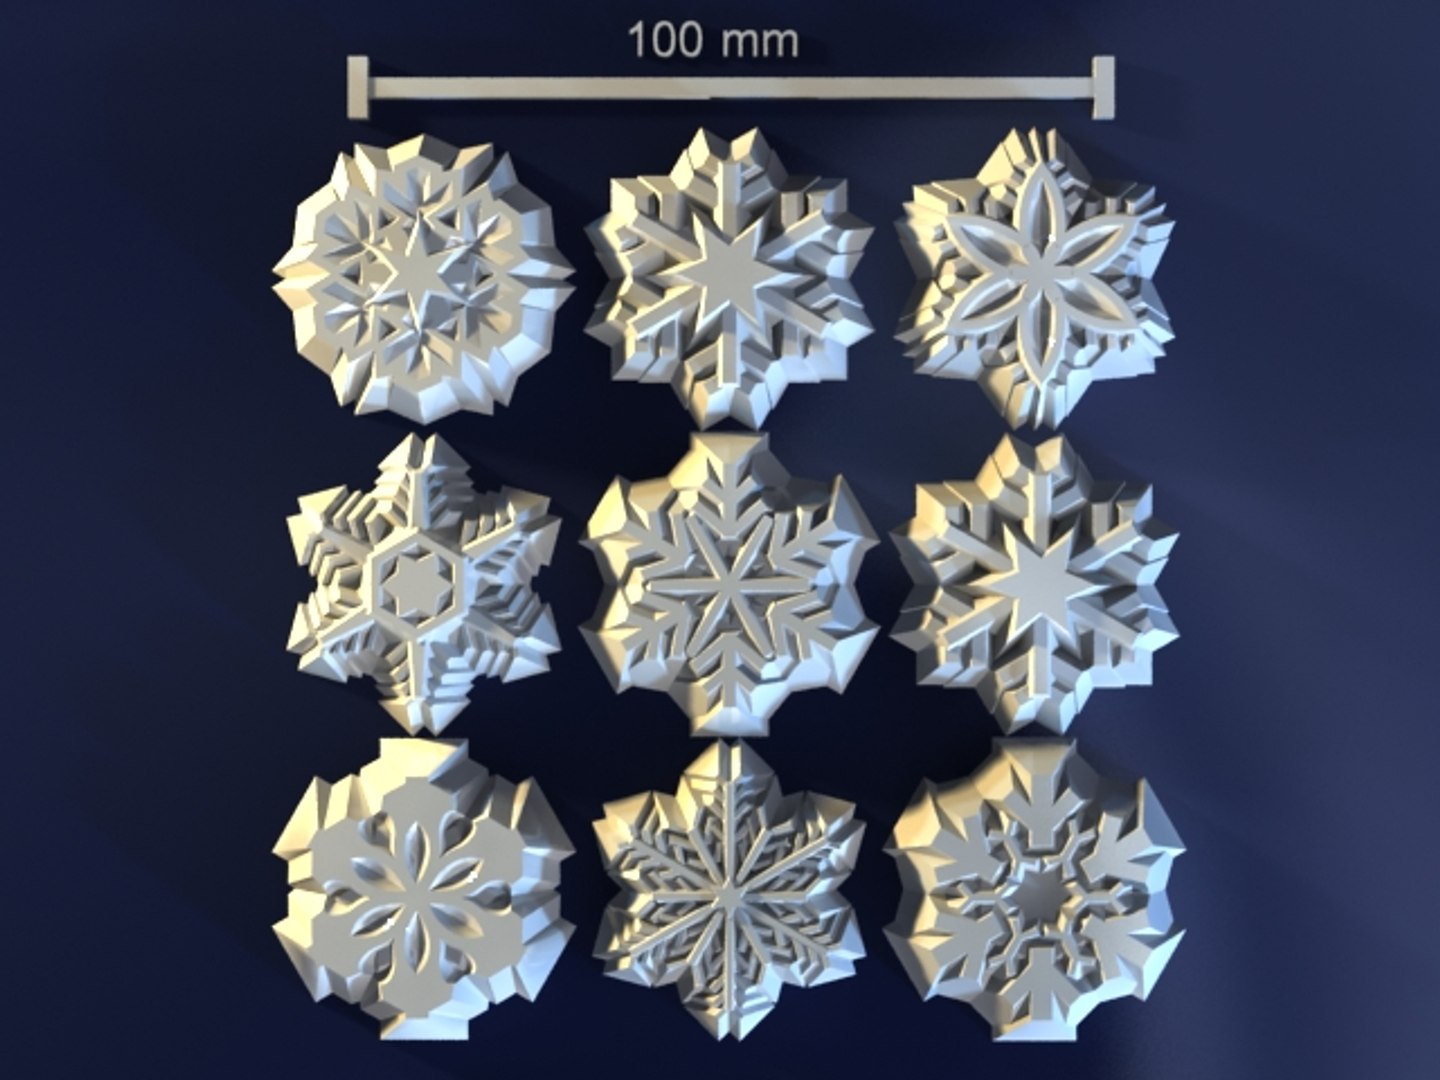 3d model snowflakes hand soap https://p.turbosquid.com/ts-thumb/5K/xbrxCo/f43ezbyy/snowflakes0000/jpg/1411227118/1920x1080/fit_q87/1b705719b621f6961de9fa8cfba3f566393fe1cd/snowflakes0000.jpg